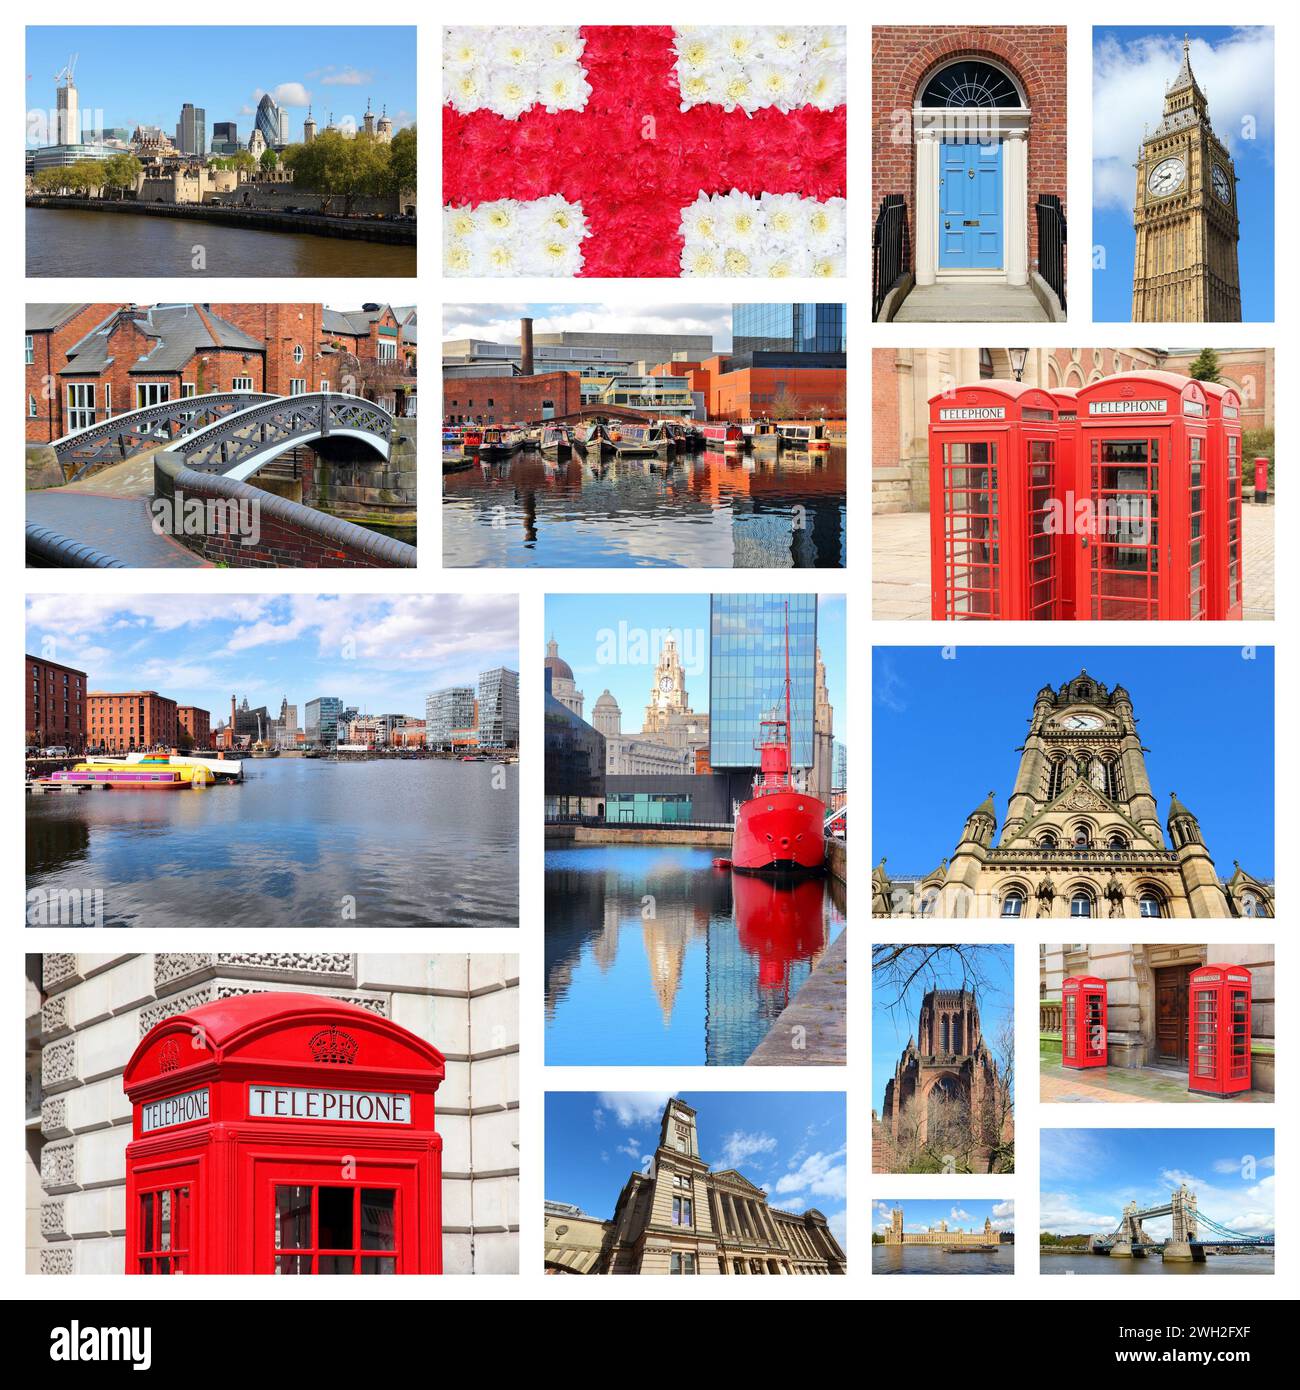 Inghilterra, Regno Unito colloca collage fotografico. Collage include le principali città come Londra, Birmingham, Manchester, Liverpool e Bolton. Foto Stock